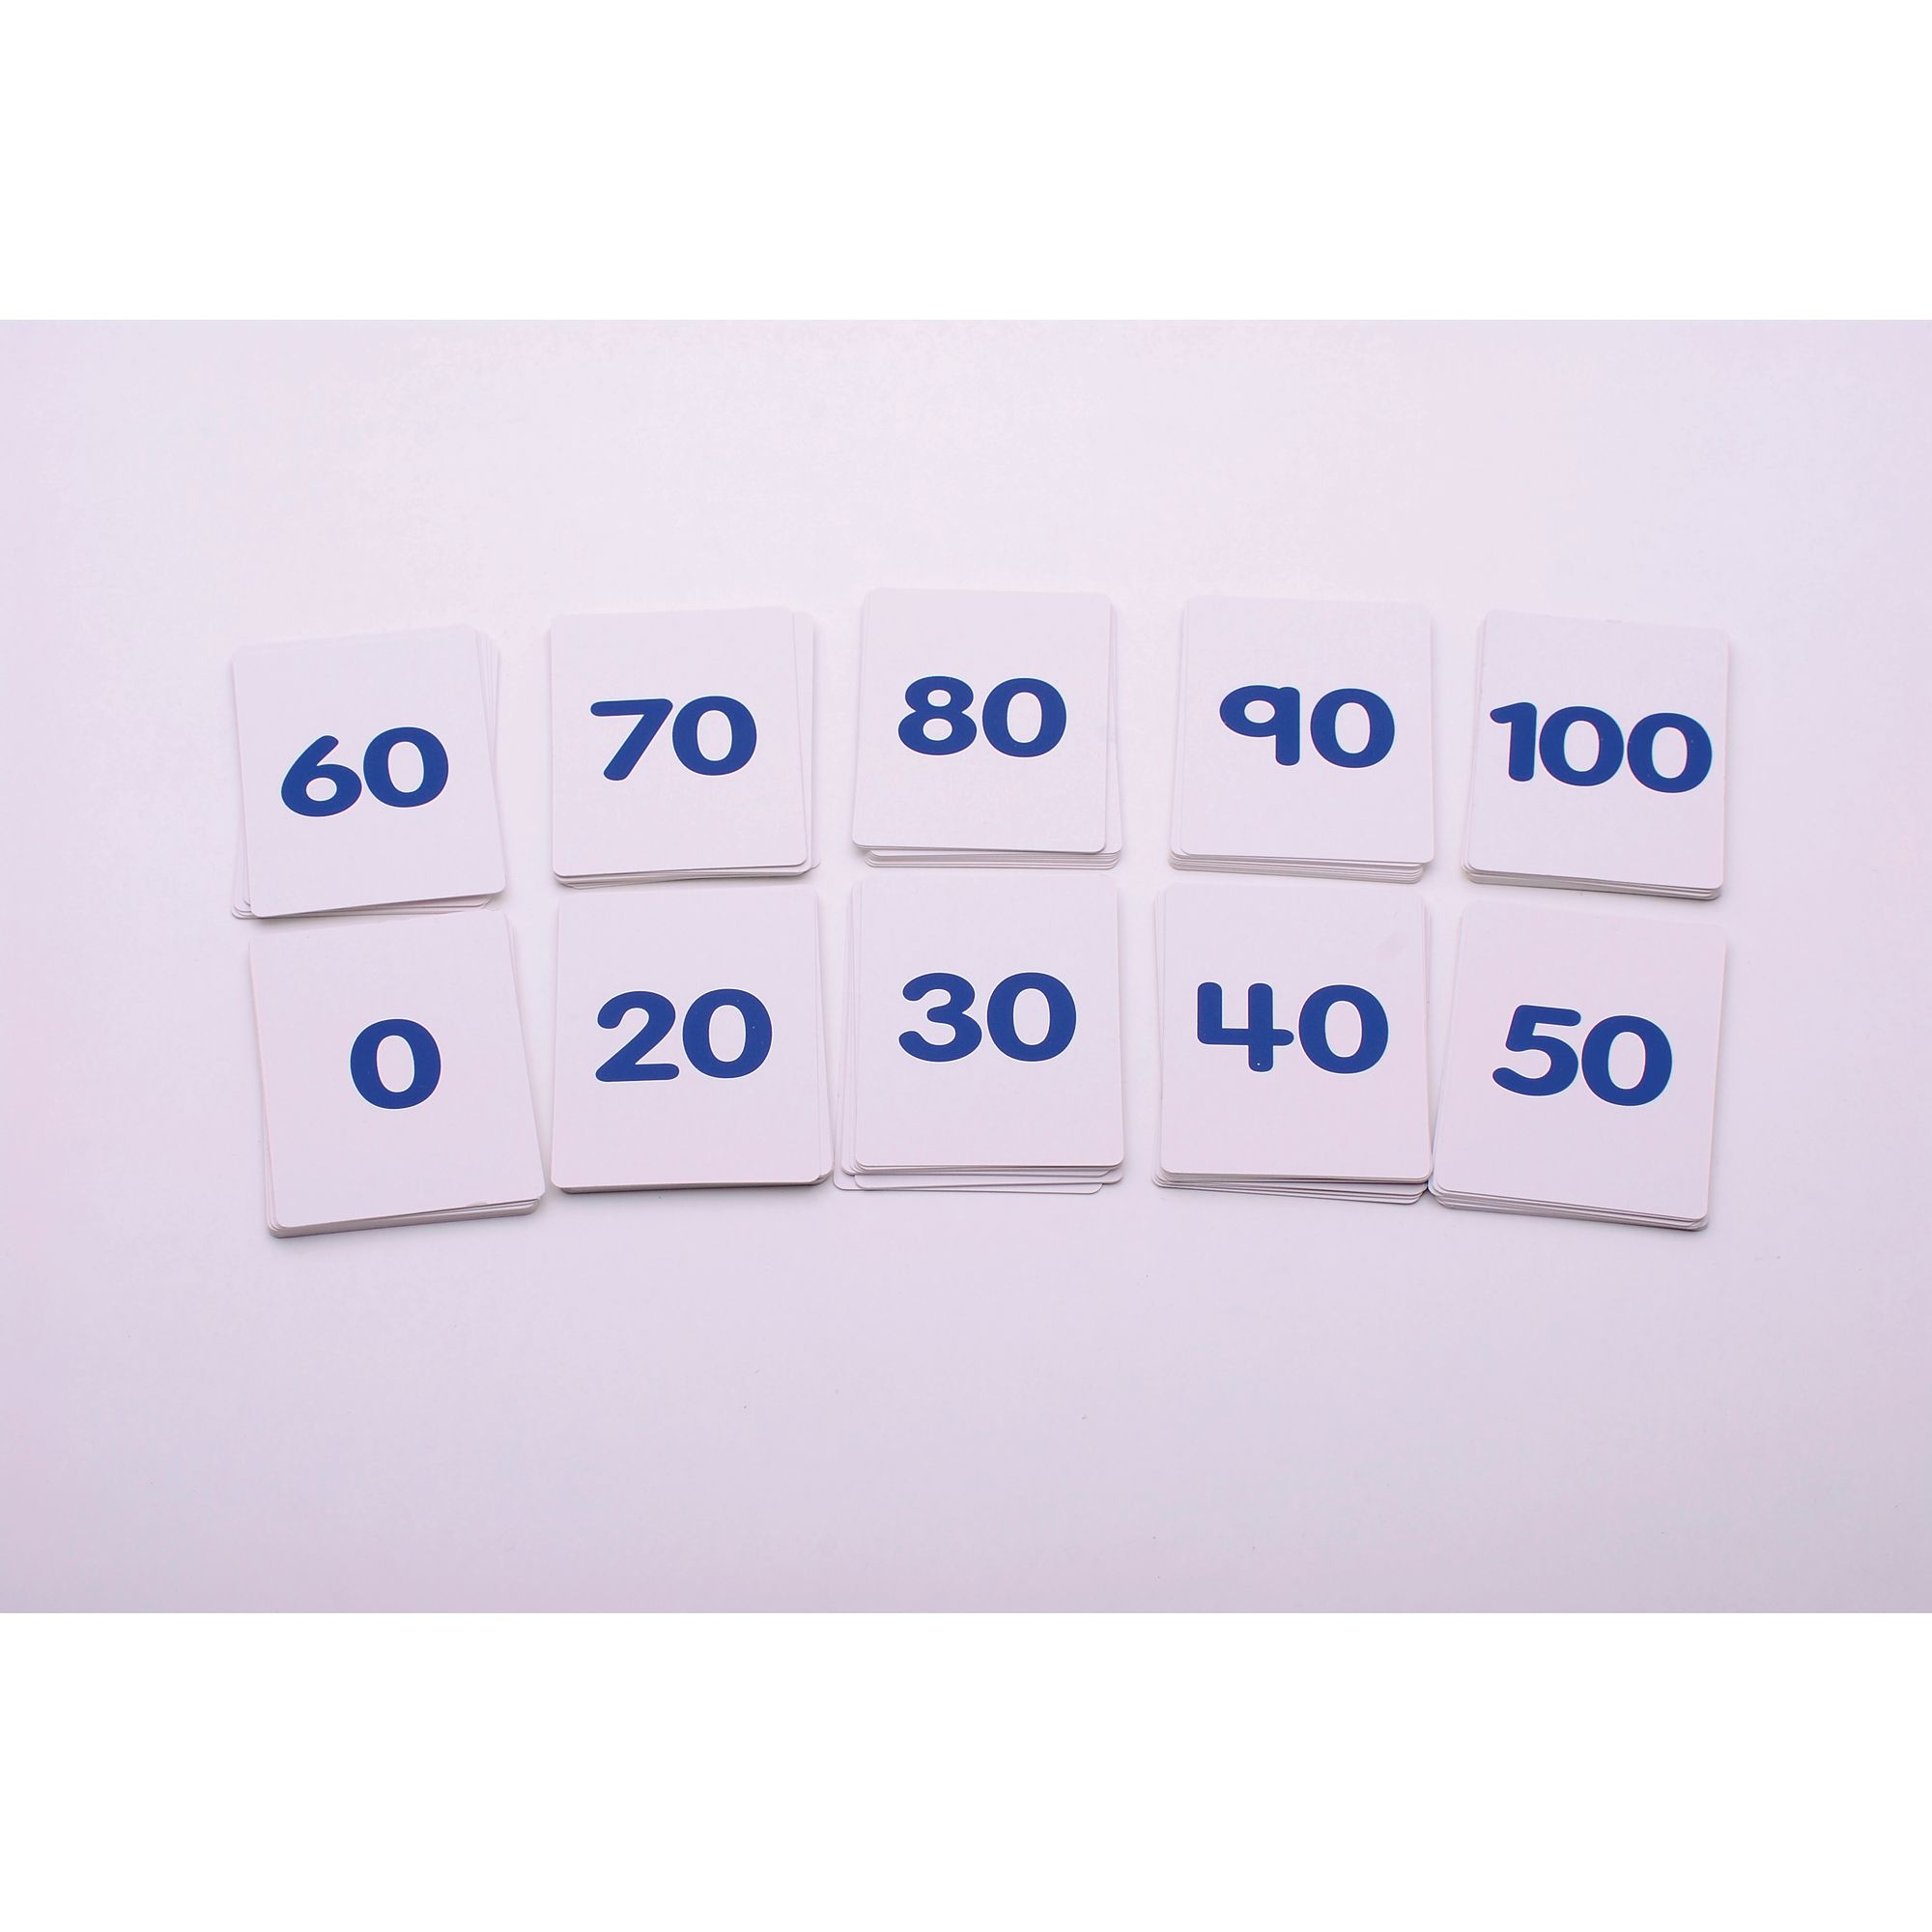 Number Cards 0-100 - 10 Sets